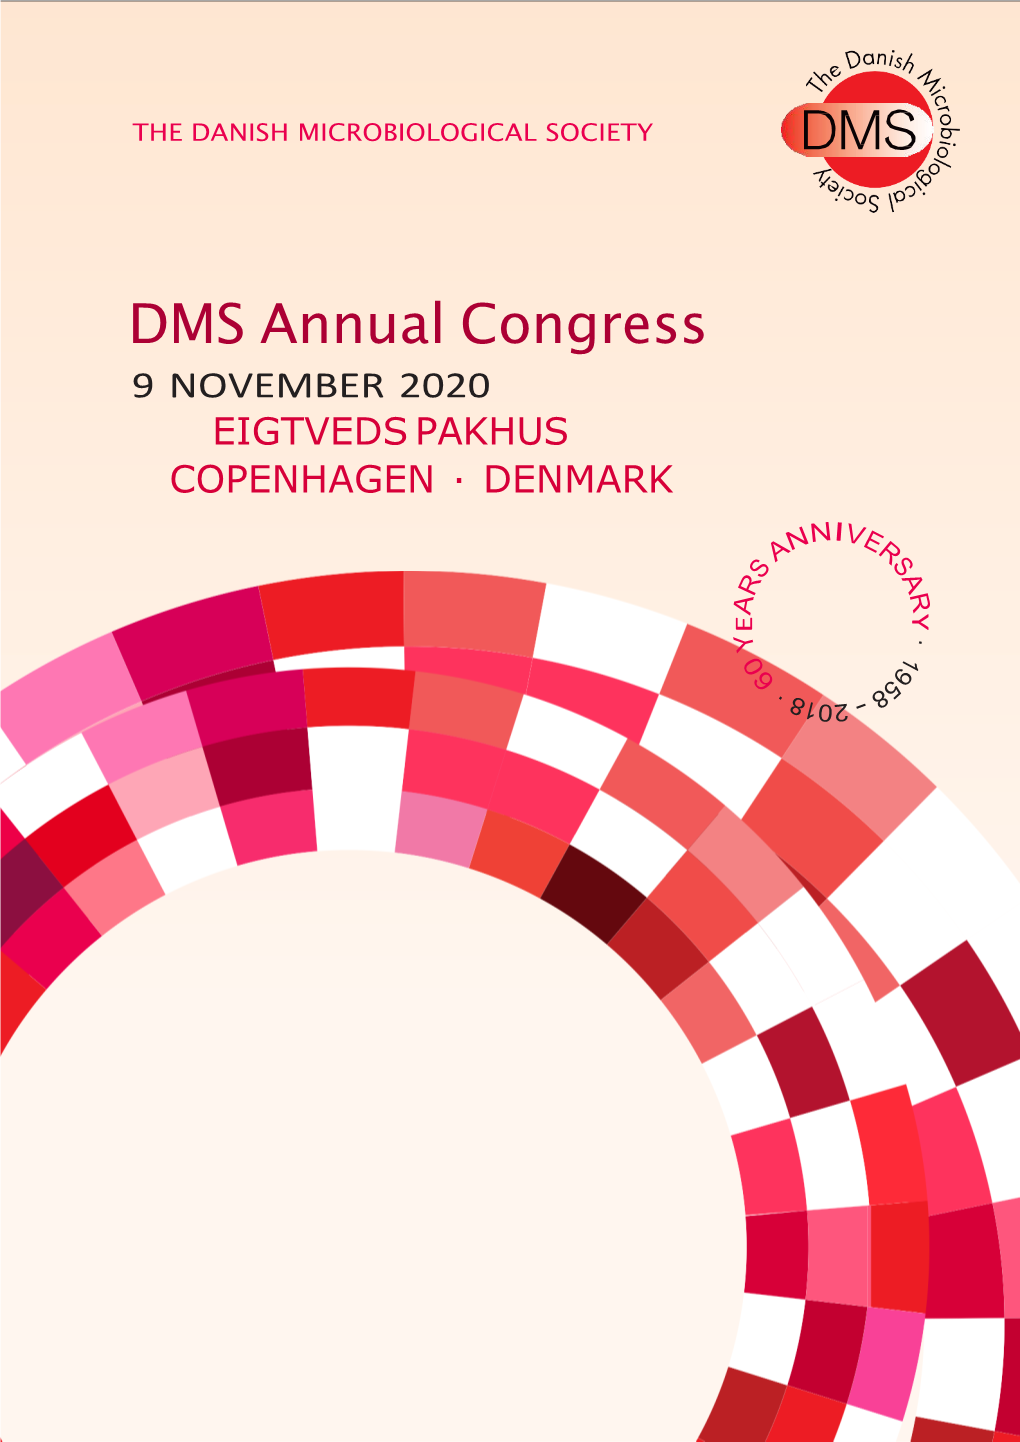 DMS Annual Congress 9 NOVEMBER 2020 EIGTVEDS PAKHUS COPENHAGEN · DENMARK